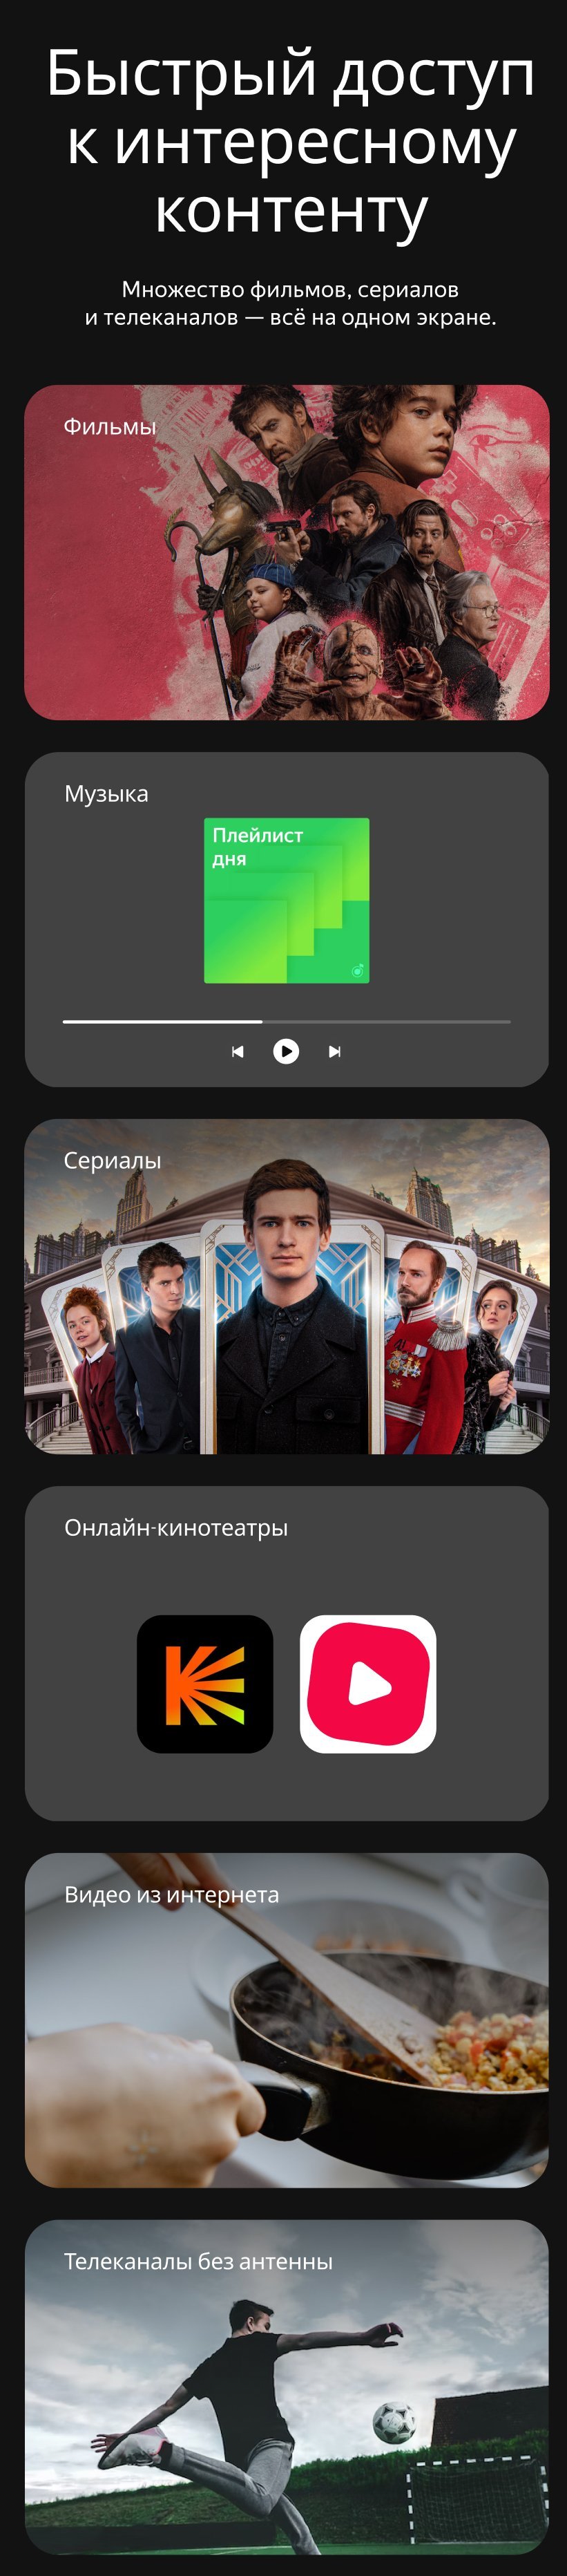 Яндекс Smart-TV с Алисой [YNDX-00251] купить